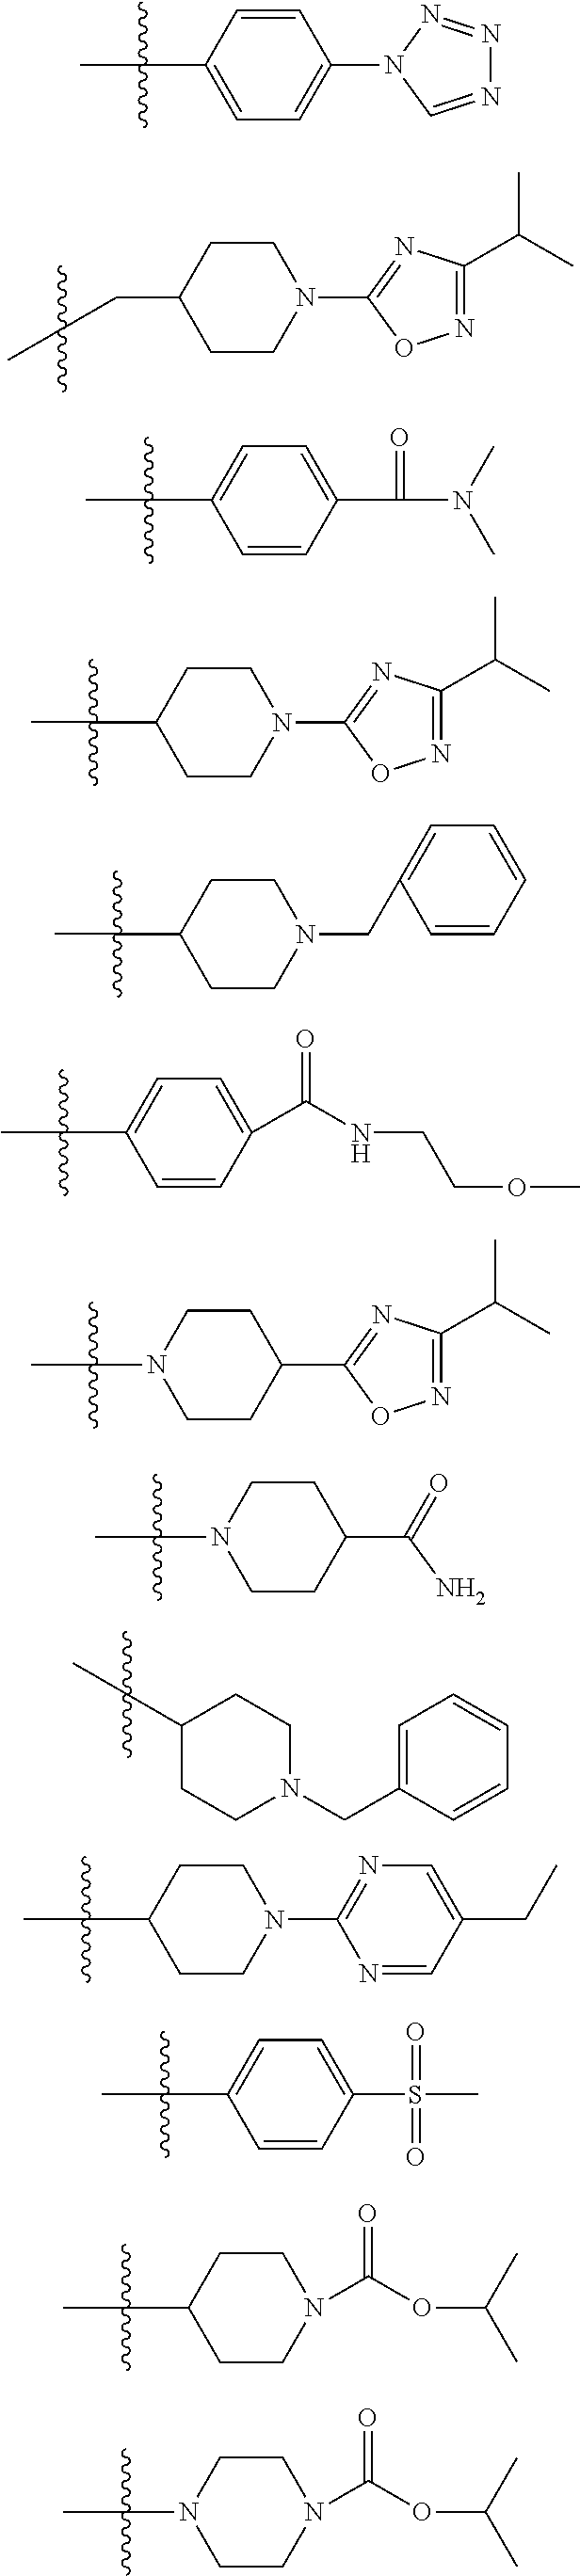 Novel gpr119 agonist compounds